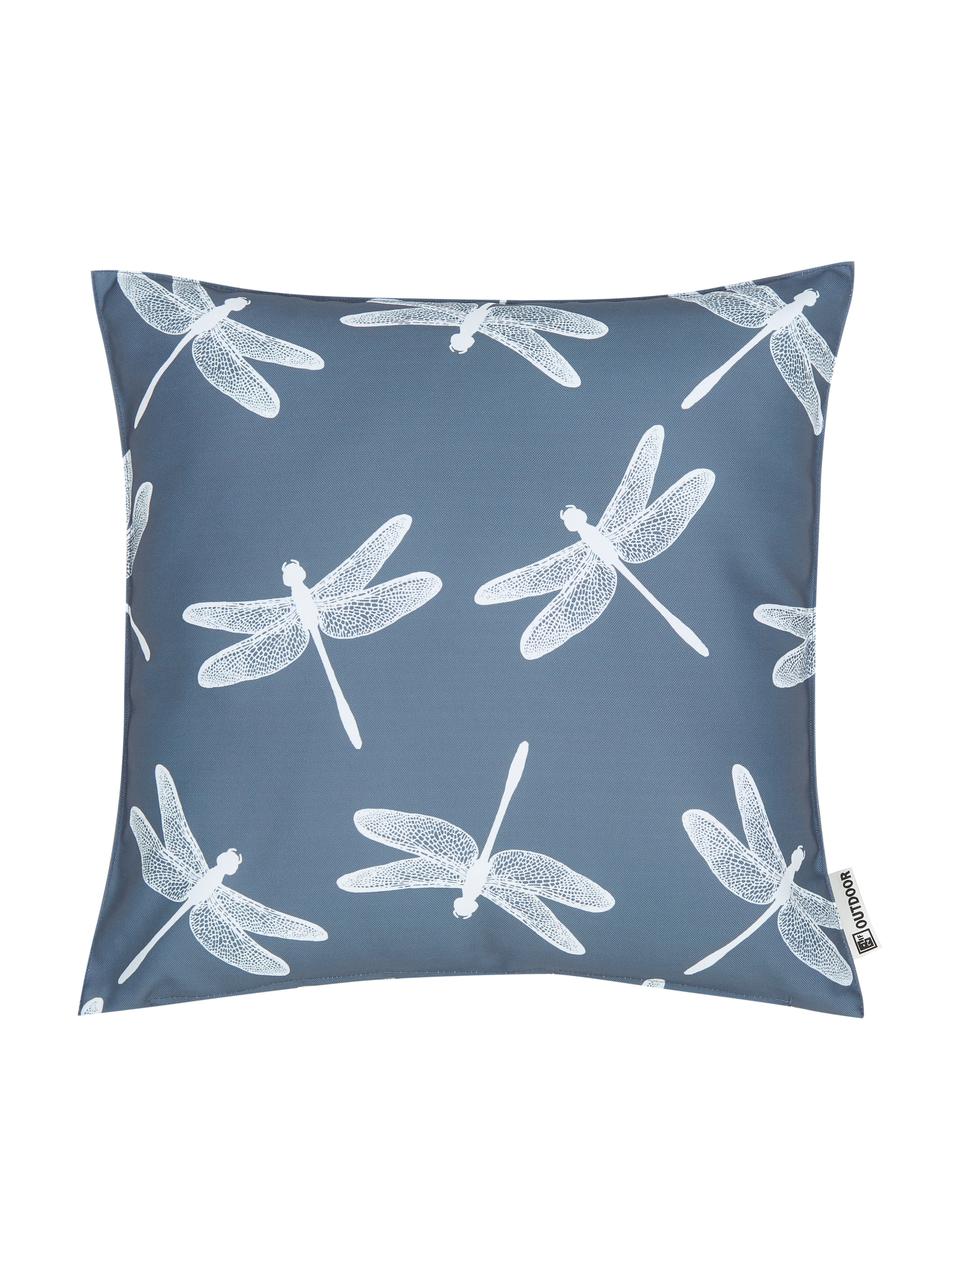 Outdoor-Kissen Dragonfly mit Libellenmotiven, 100% Polyester, Dunkelgrau, Weiss, 47 x 47 cm